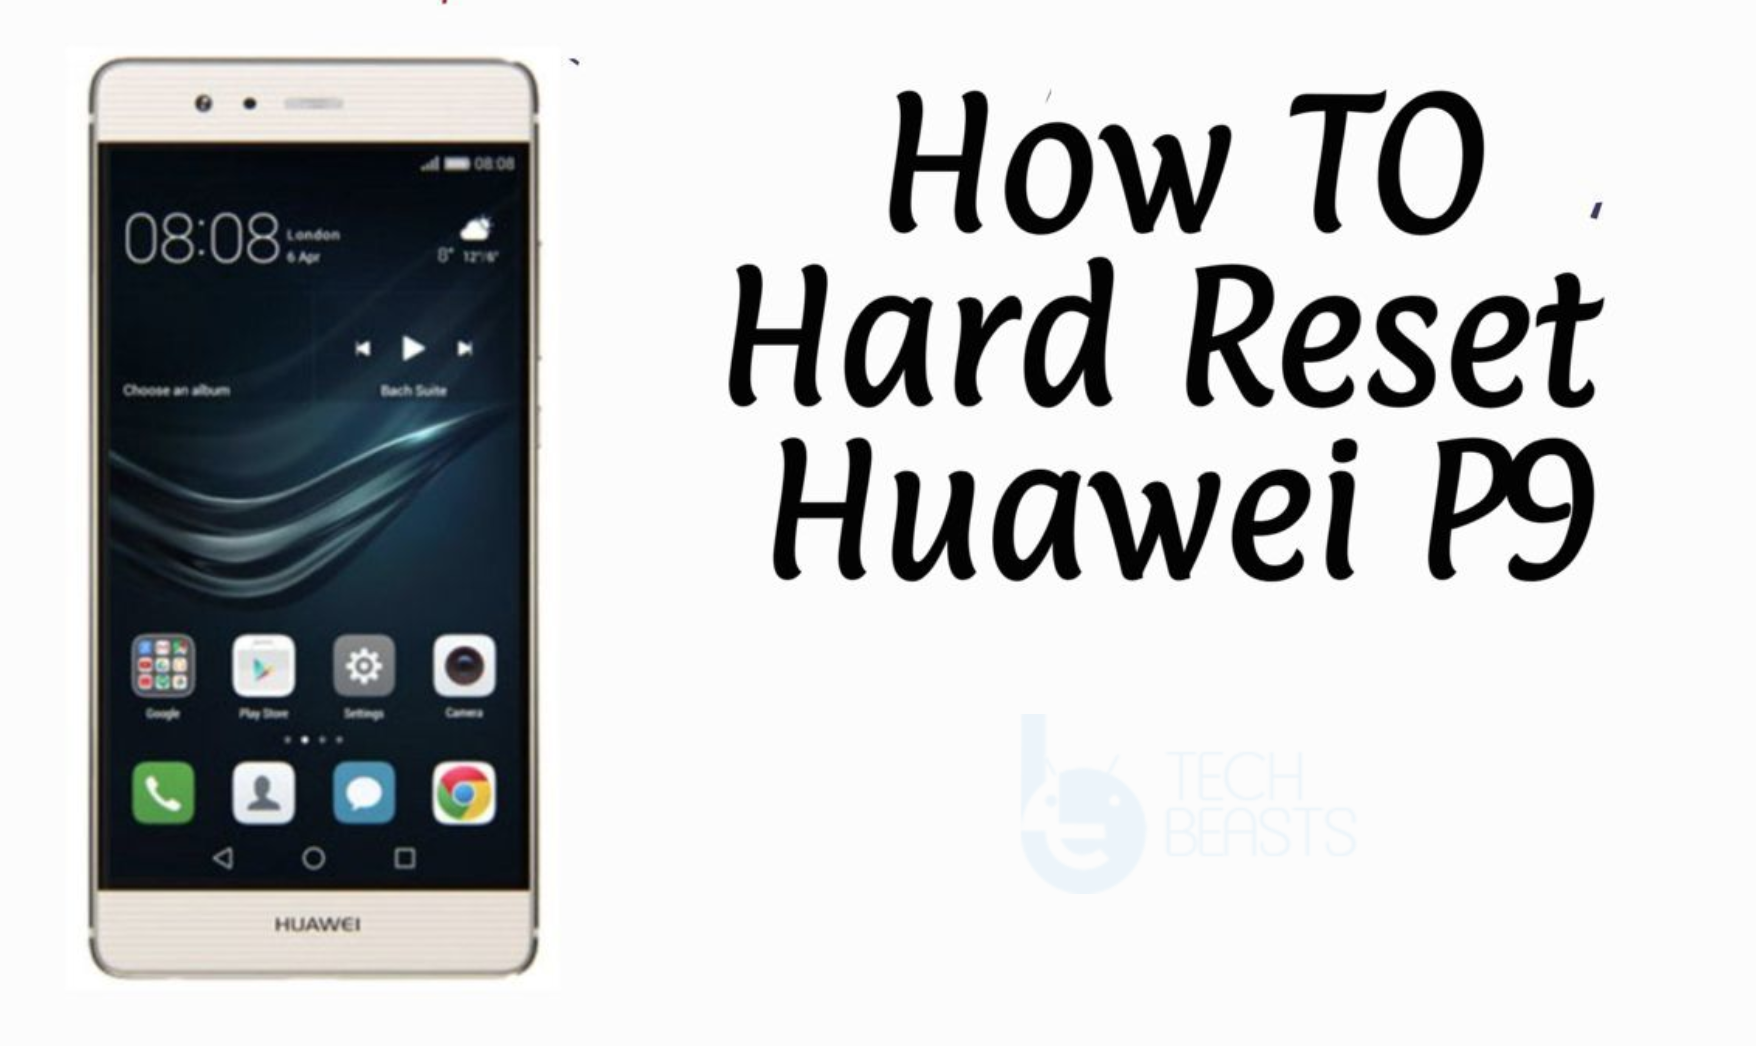 Hard Reset Huawei P9